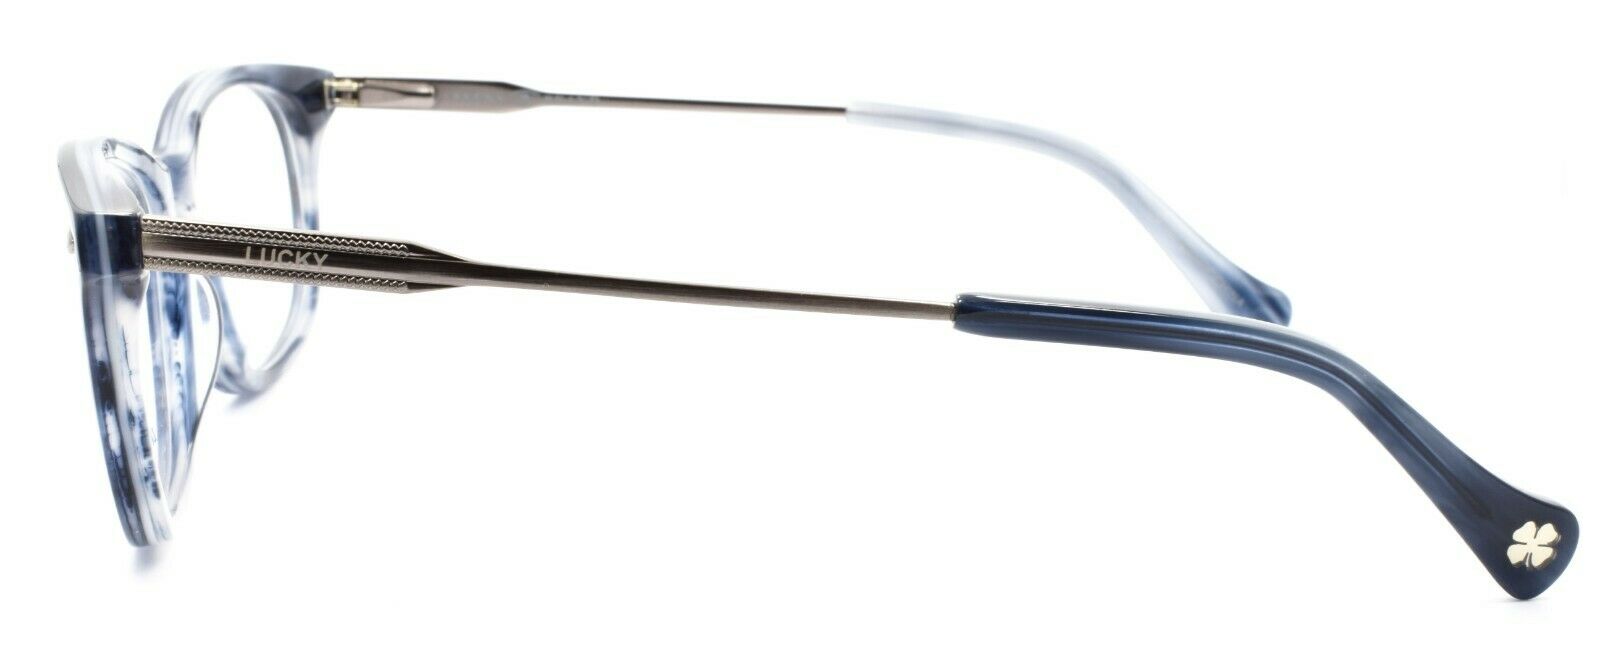 3-LUCKY BRAND Spectator Unisex Eyeglasses Frames 49-18-140 Blue Horn + CASE-751286221237-IKSpecs